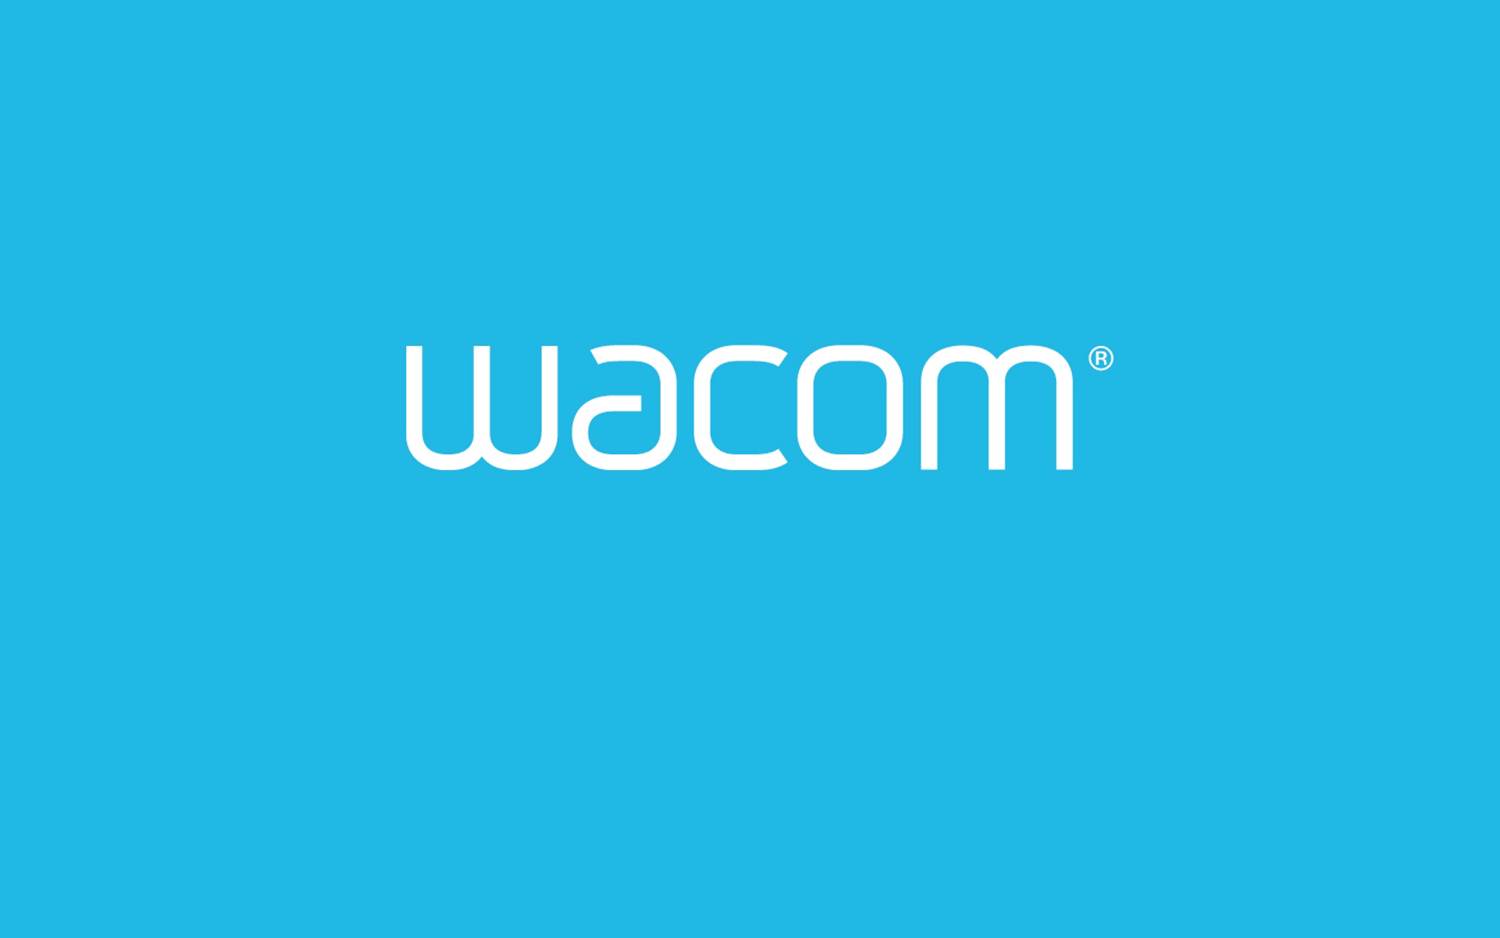 Hardware completo de Wacom para mexico - Compra con Grupo Deco las licencias para hardware profesional en diseño y edición de elementos gráficos de Wacom - México